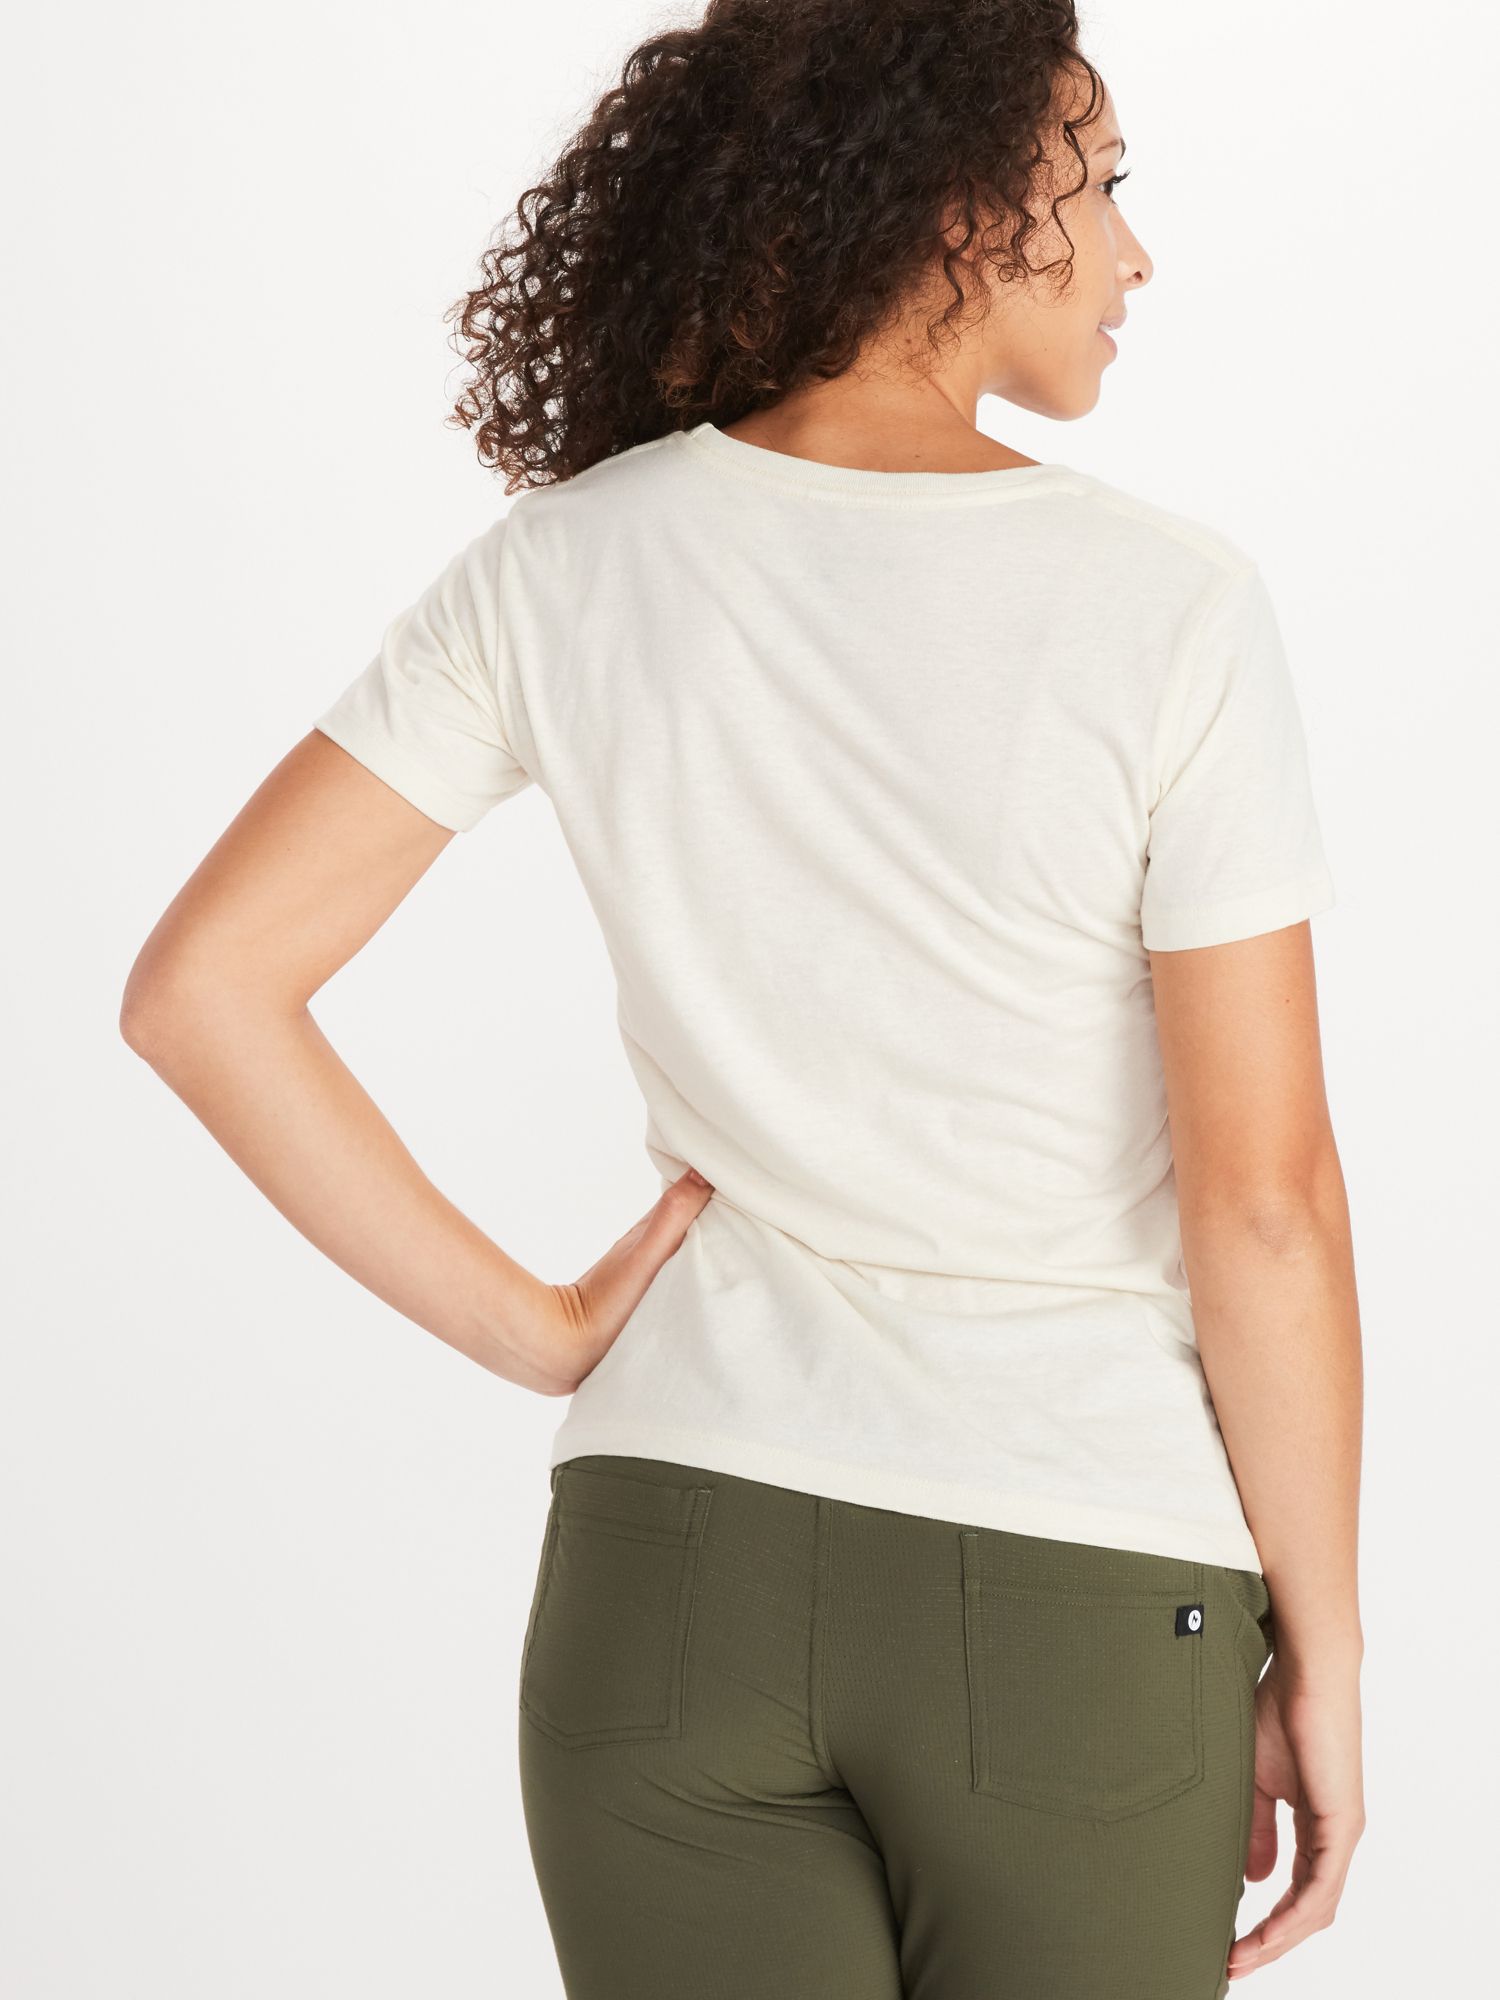 Women's Arrow Short-Sleeve T-Shirt